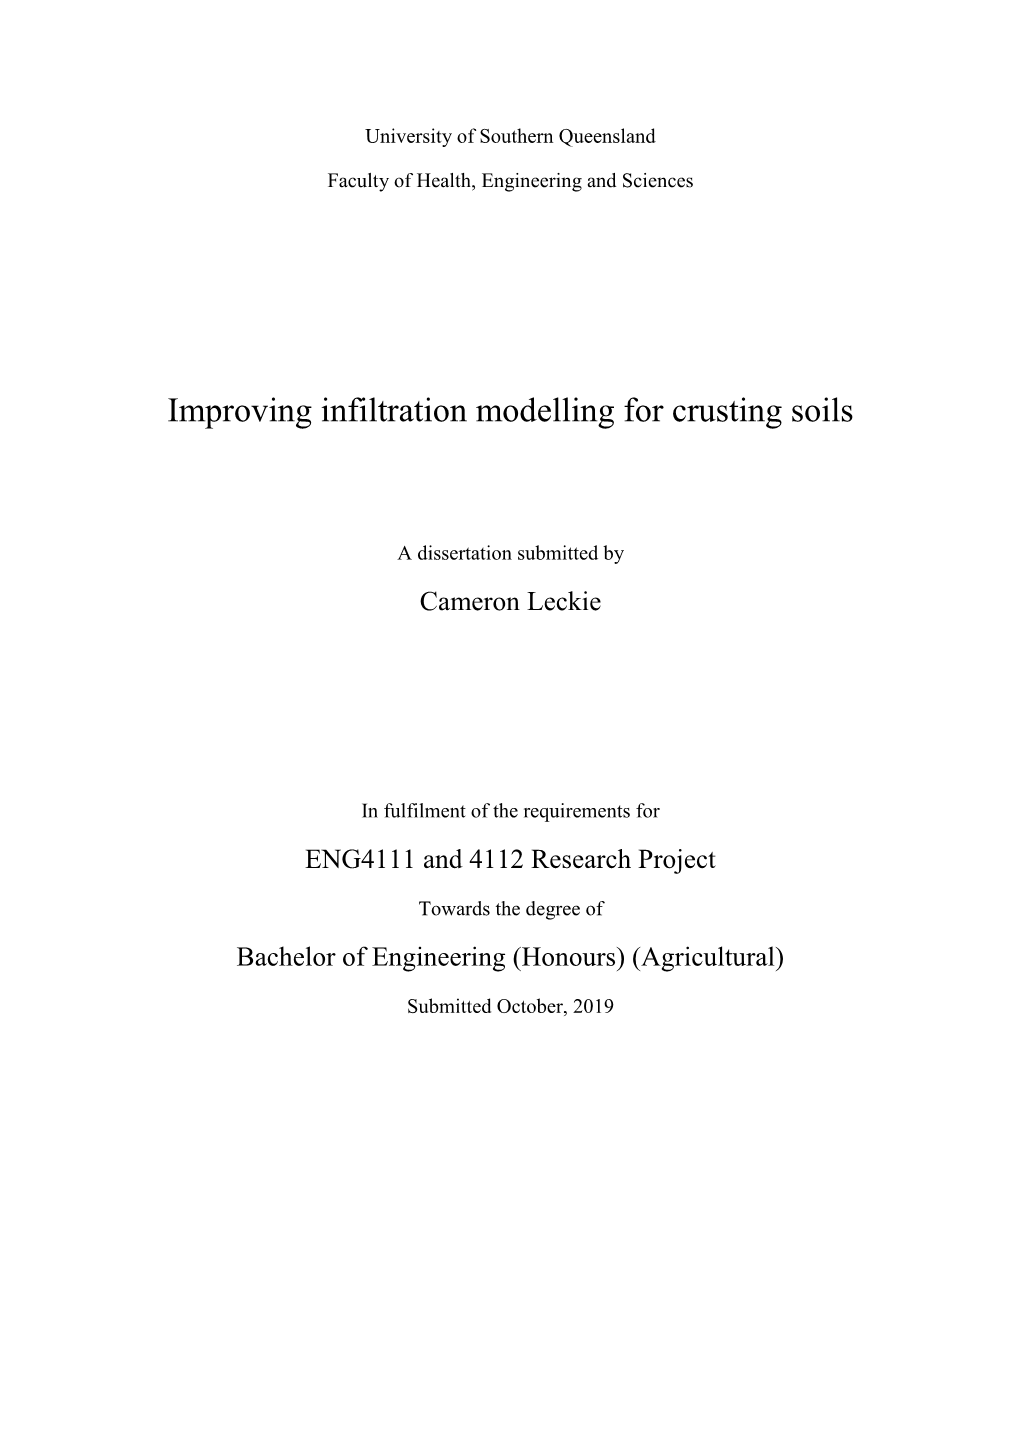 Improving Infiltration Modelling for Crusting Soils